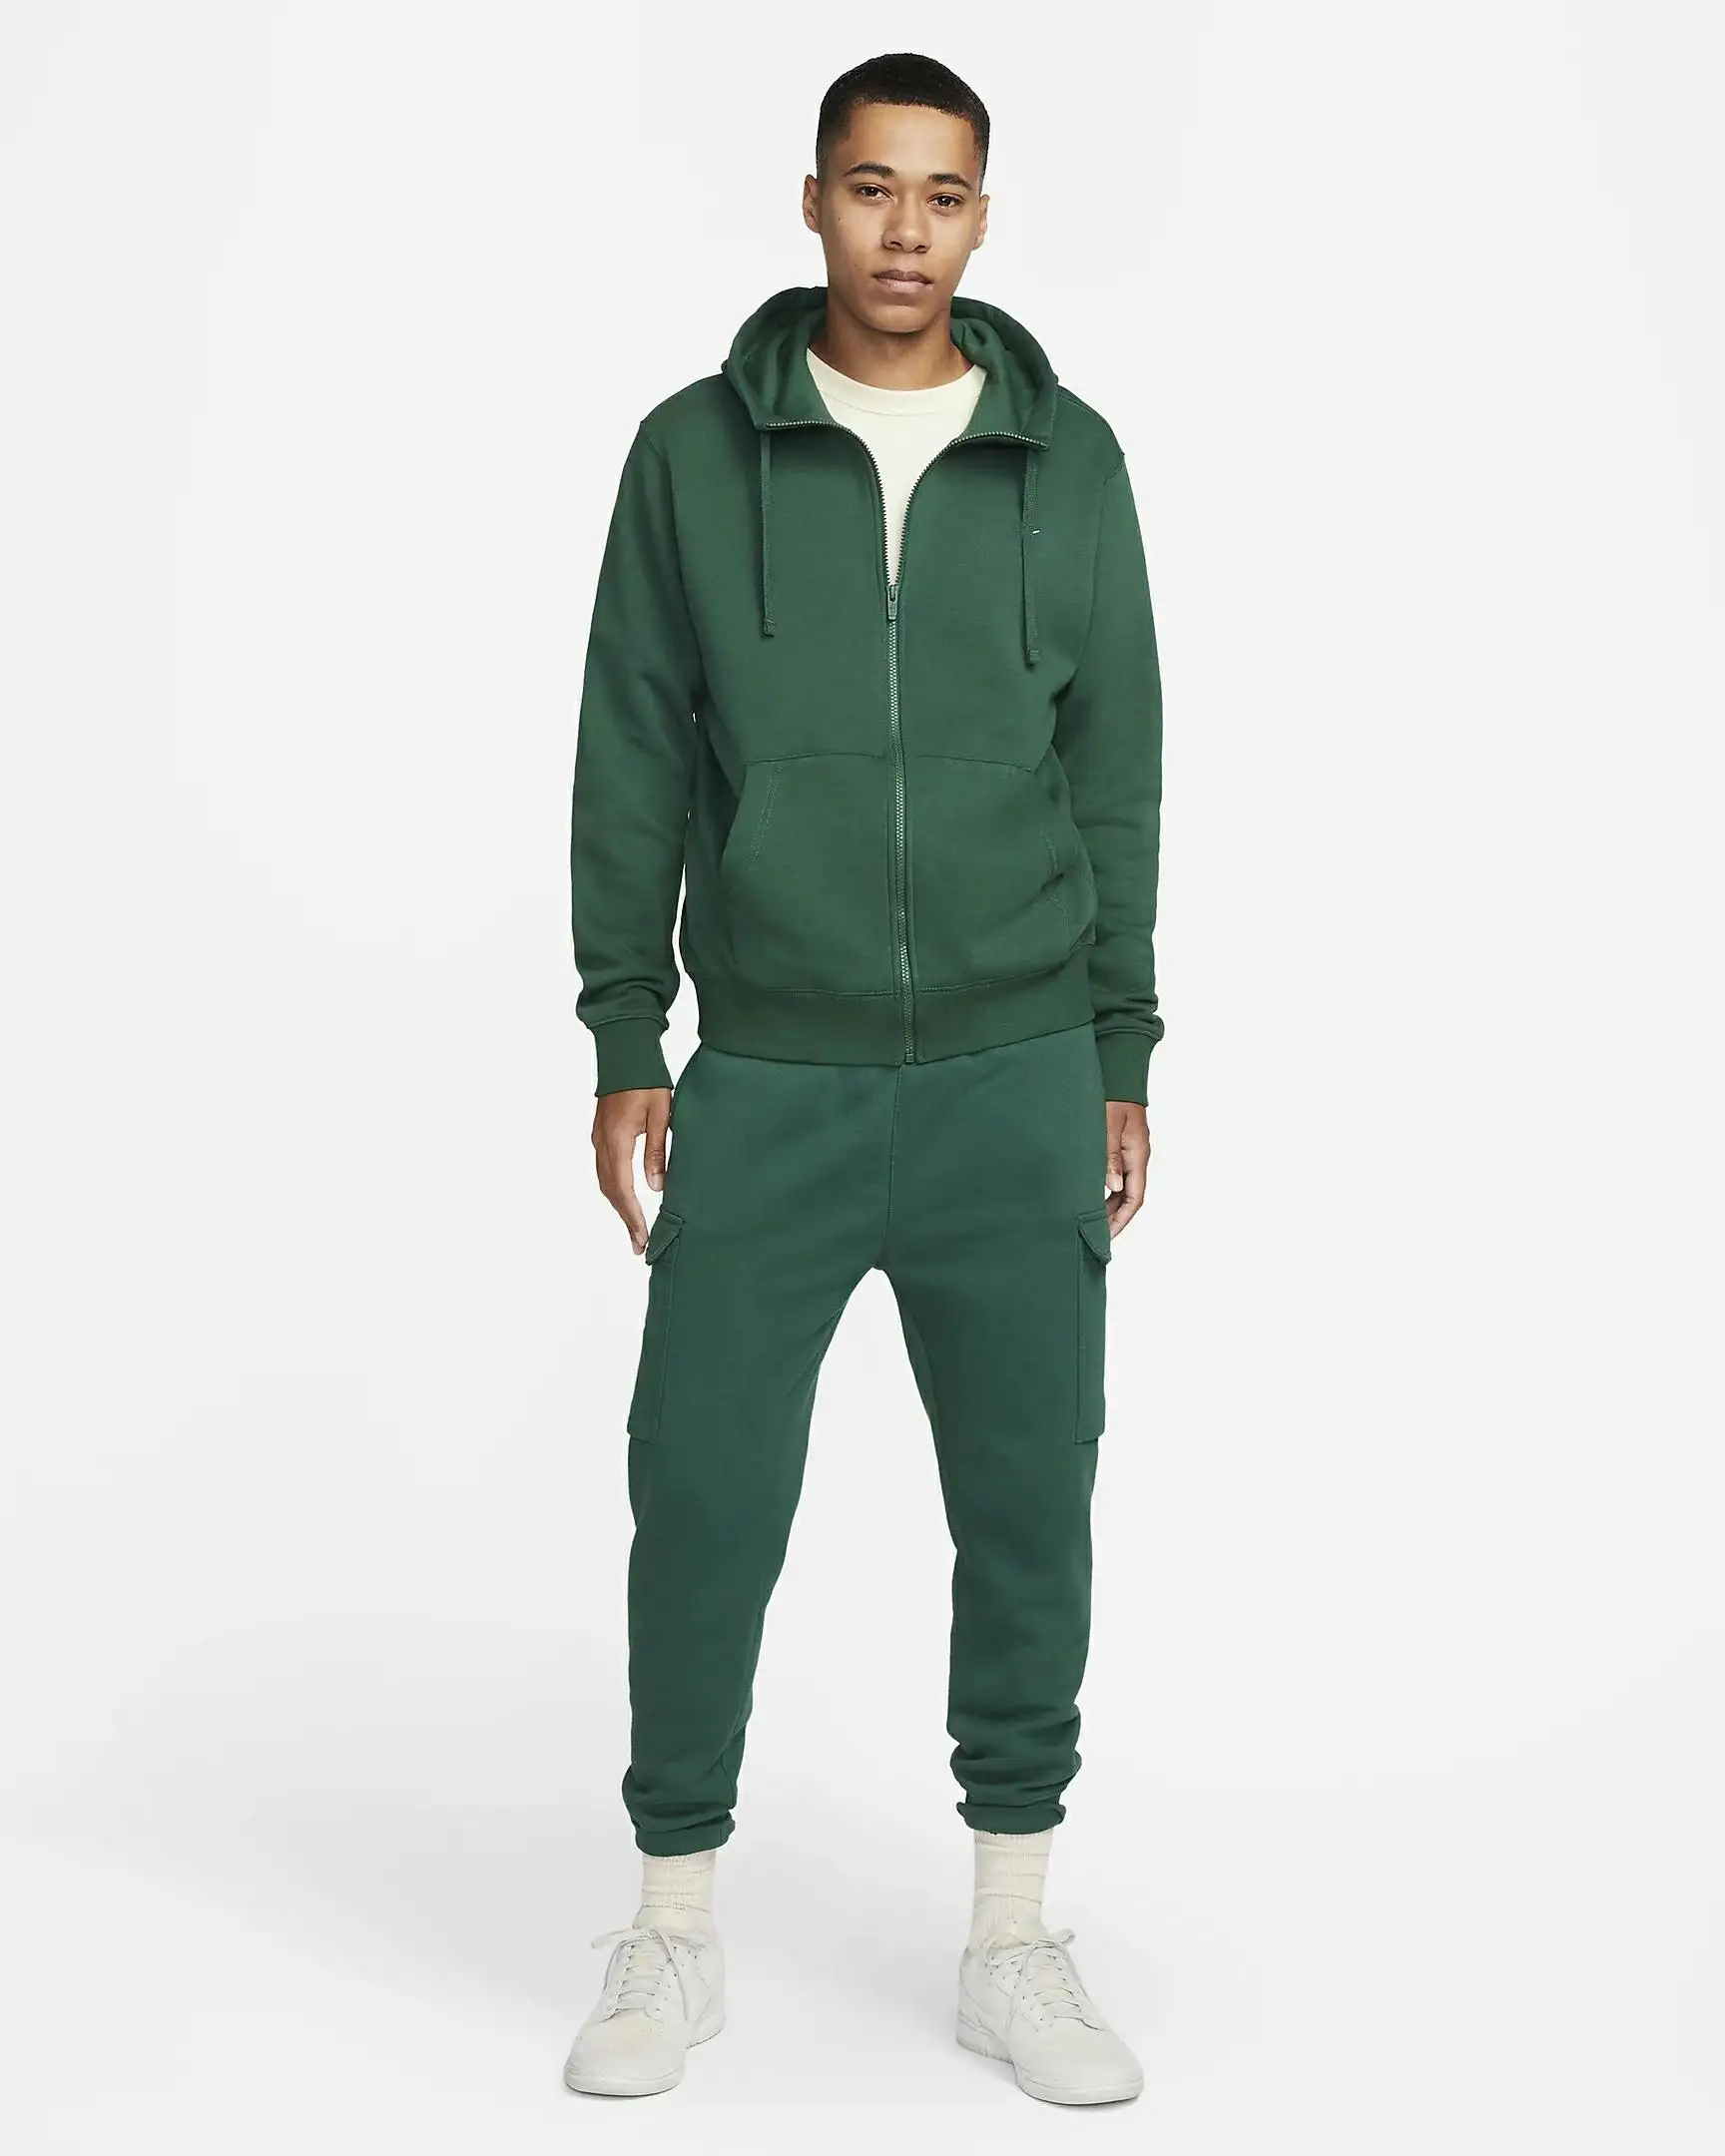 Best Quality Blank New Sweatshirt Wholesale Streetwear Clothing Mens Full Zip Green Hoodie